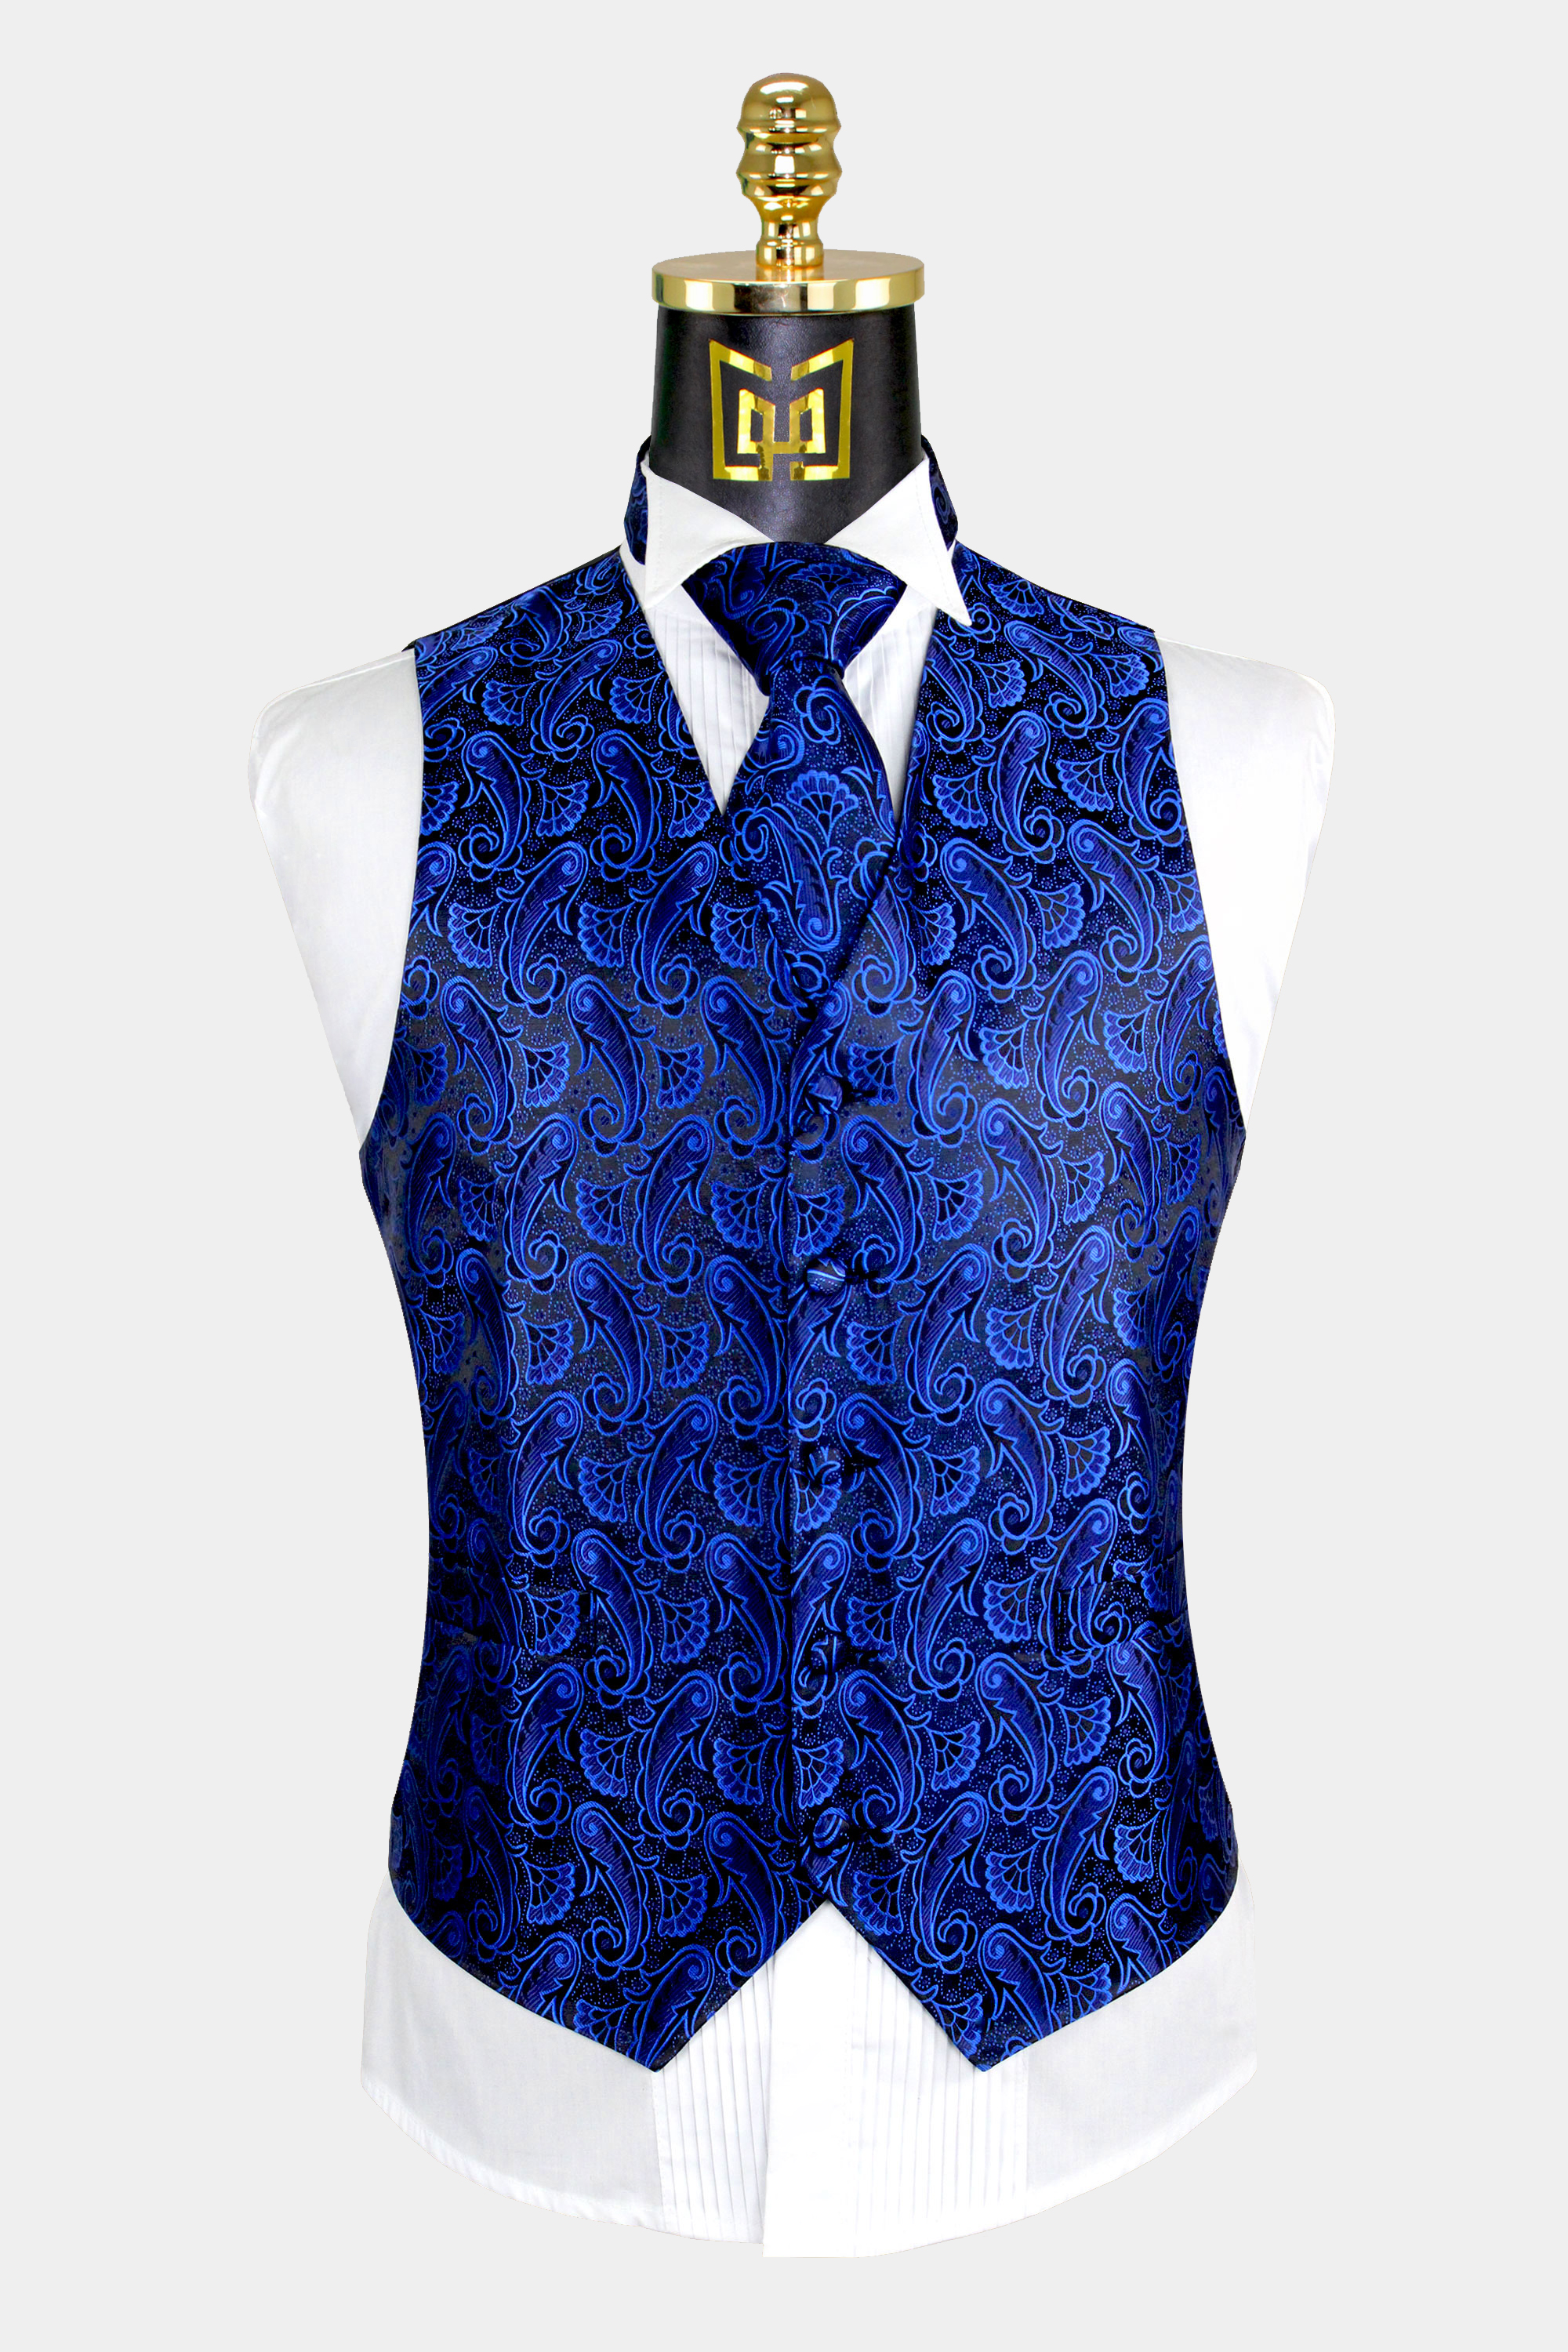 Royal Blue & Black Paisley Vest Set - 3 Piece